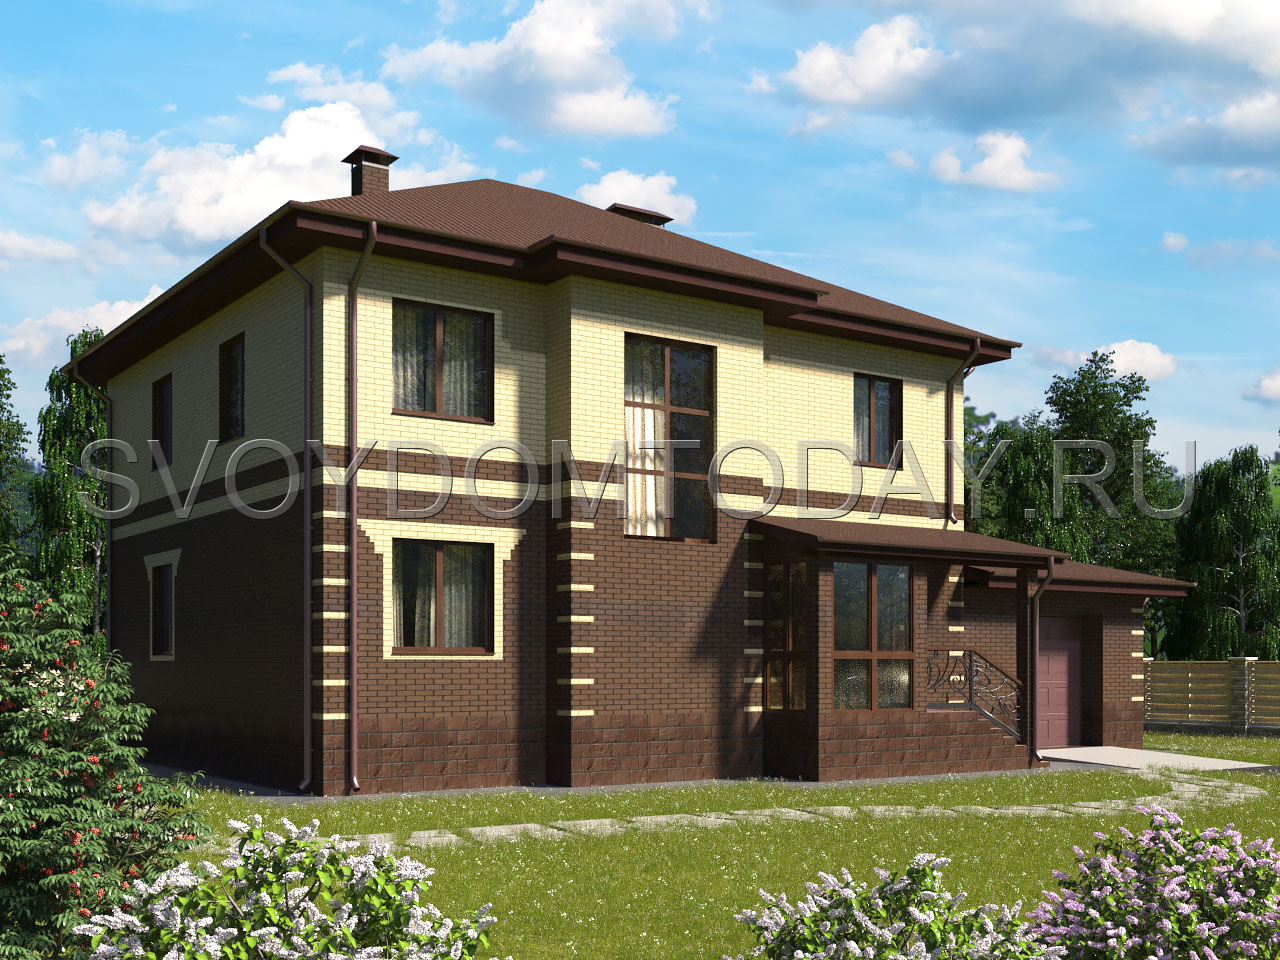 Проект двухэтажного кирпичного дома с двумя эркерами и гаражом SDT-242-2K.G. Фасад 2